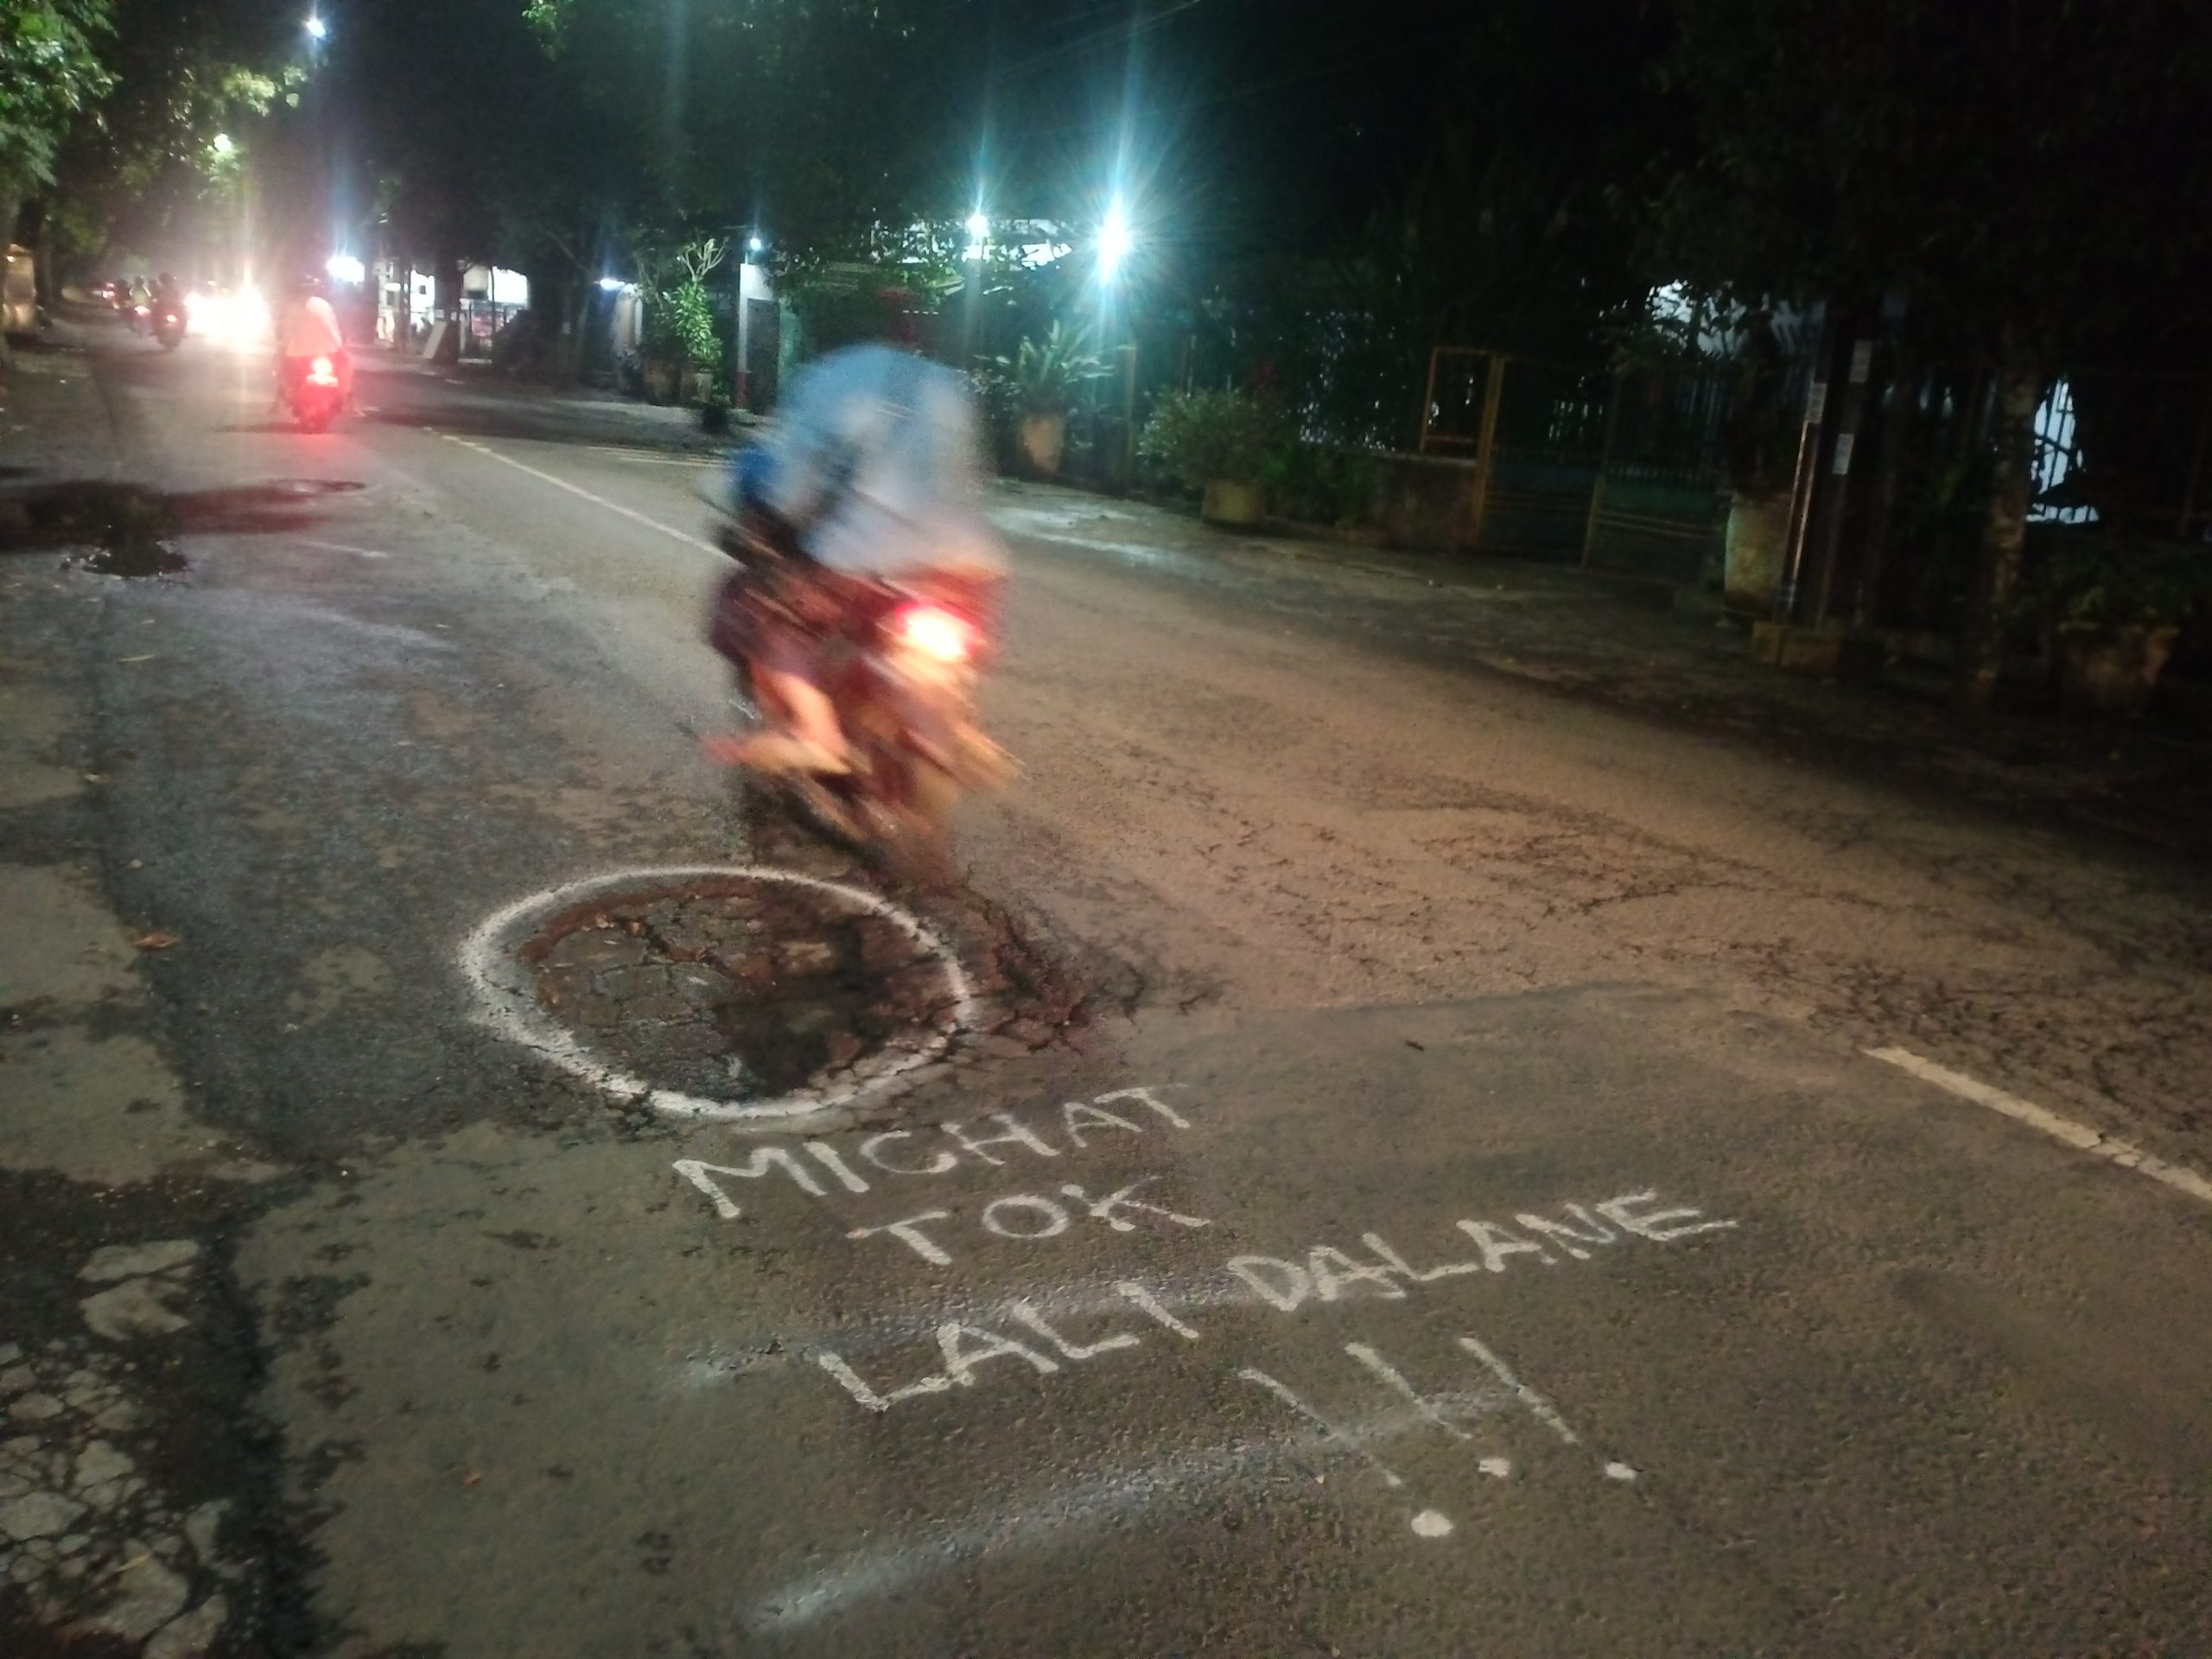 Protes Kondisi Jalan Rusak di Malang, Ada Tulisan ‘Michat tok Lali Dalane’